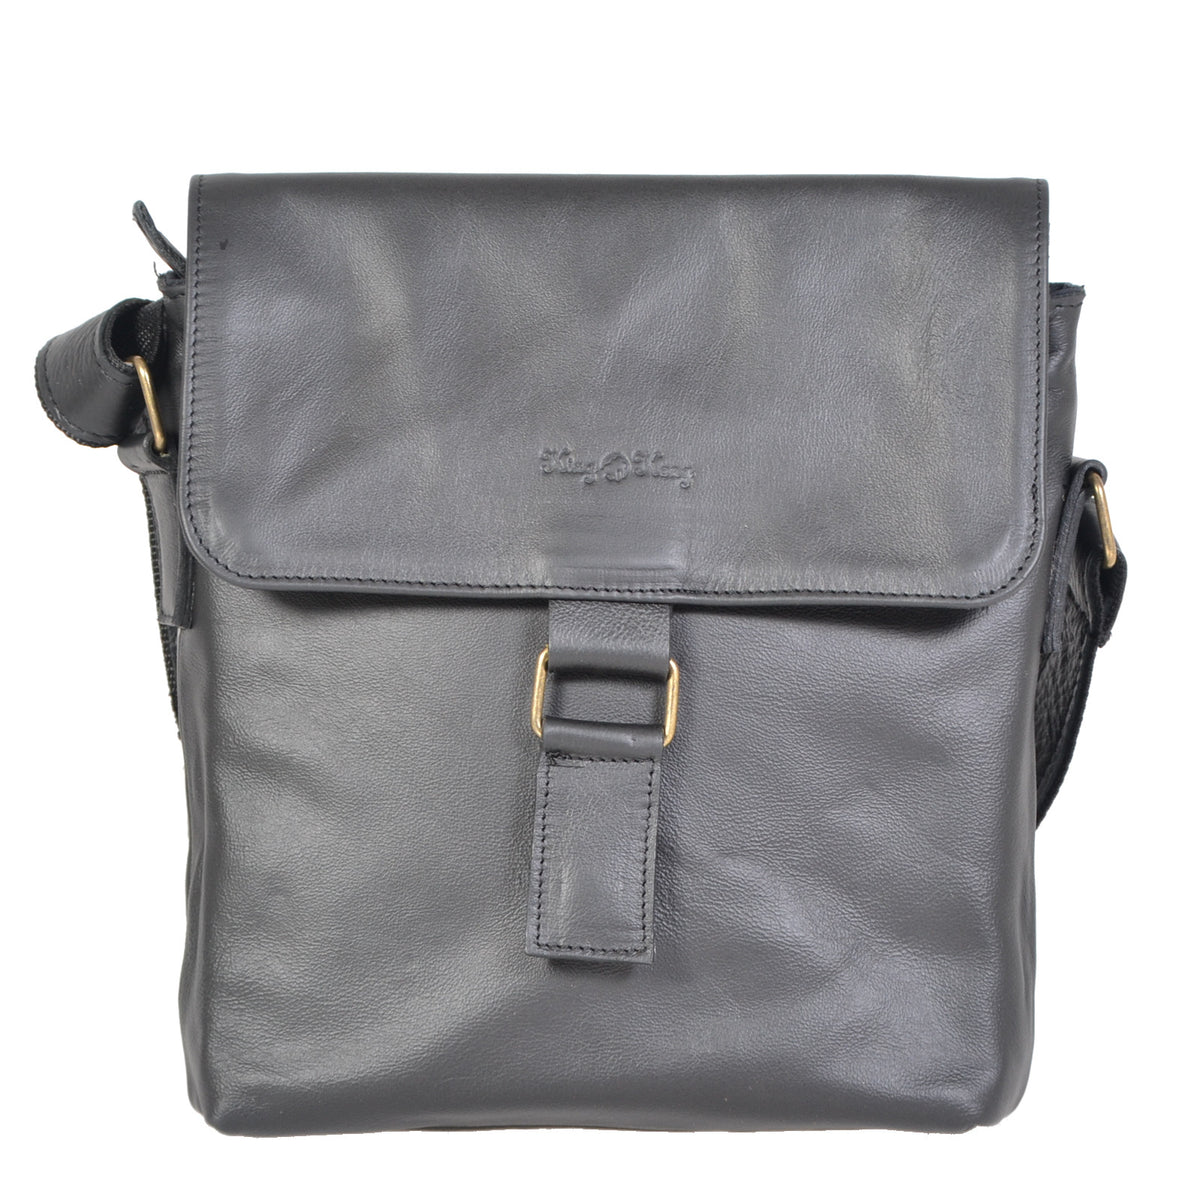 iPad Messenger Leather Handbag - kingkong-leather